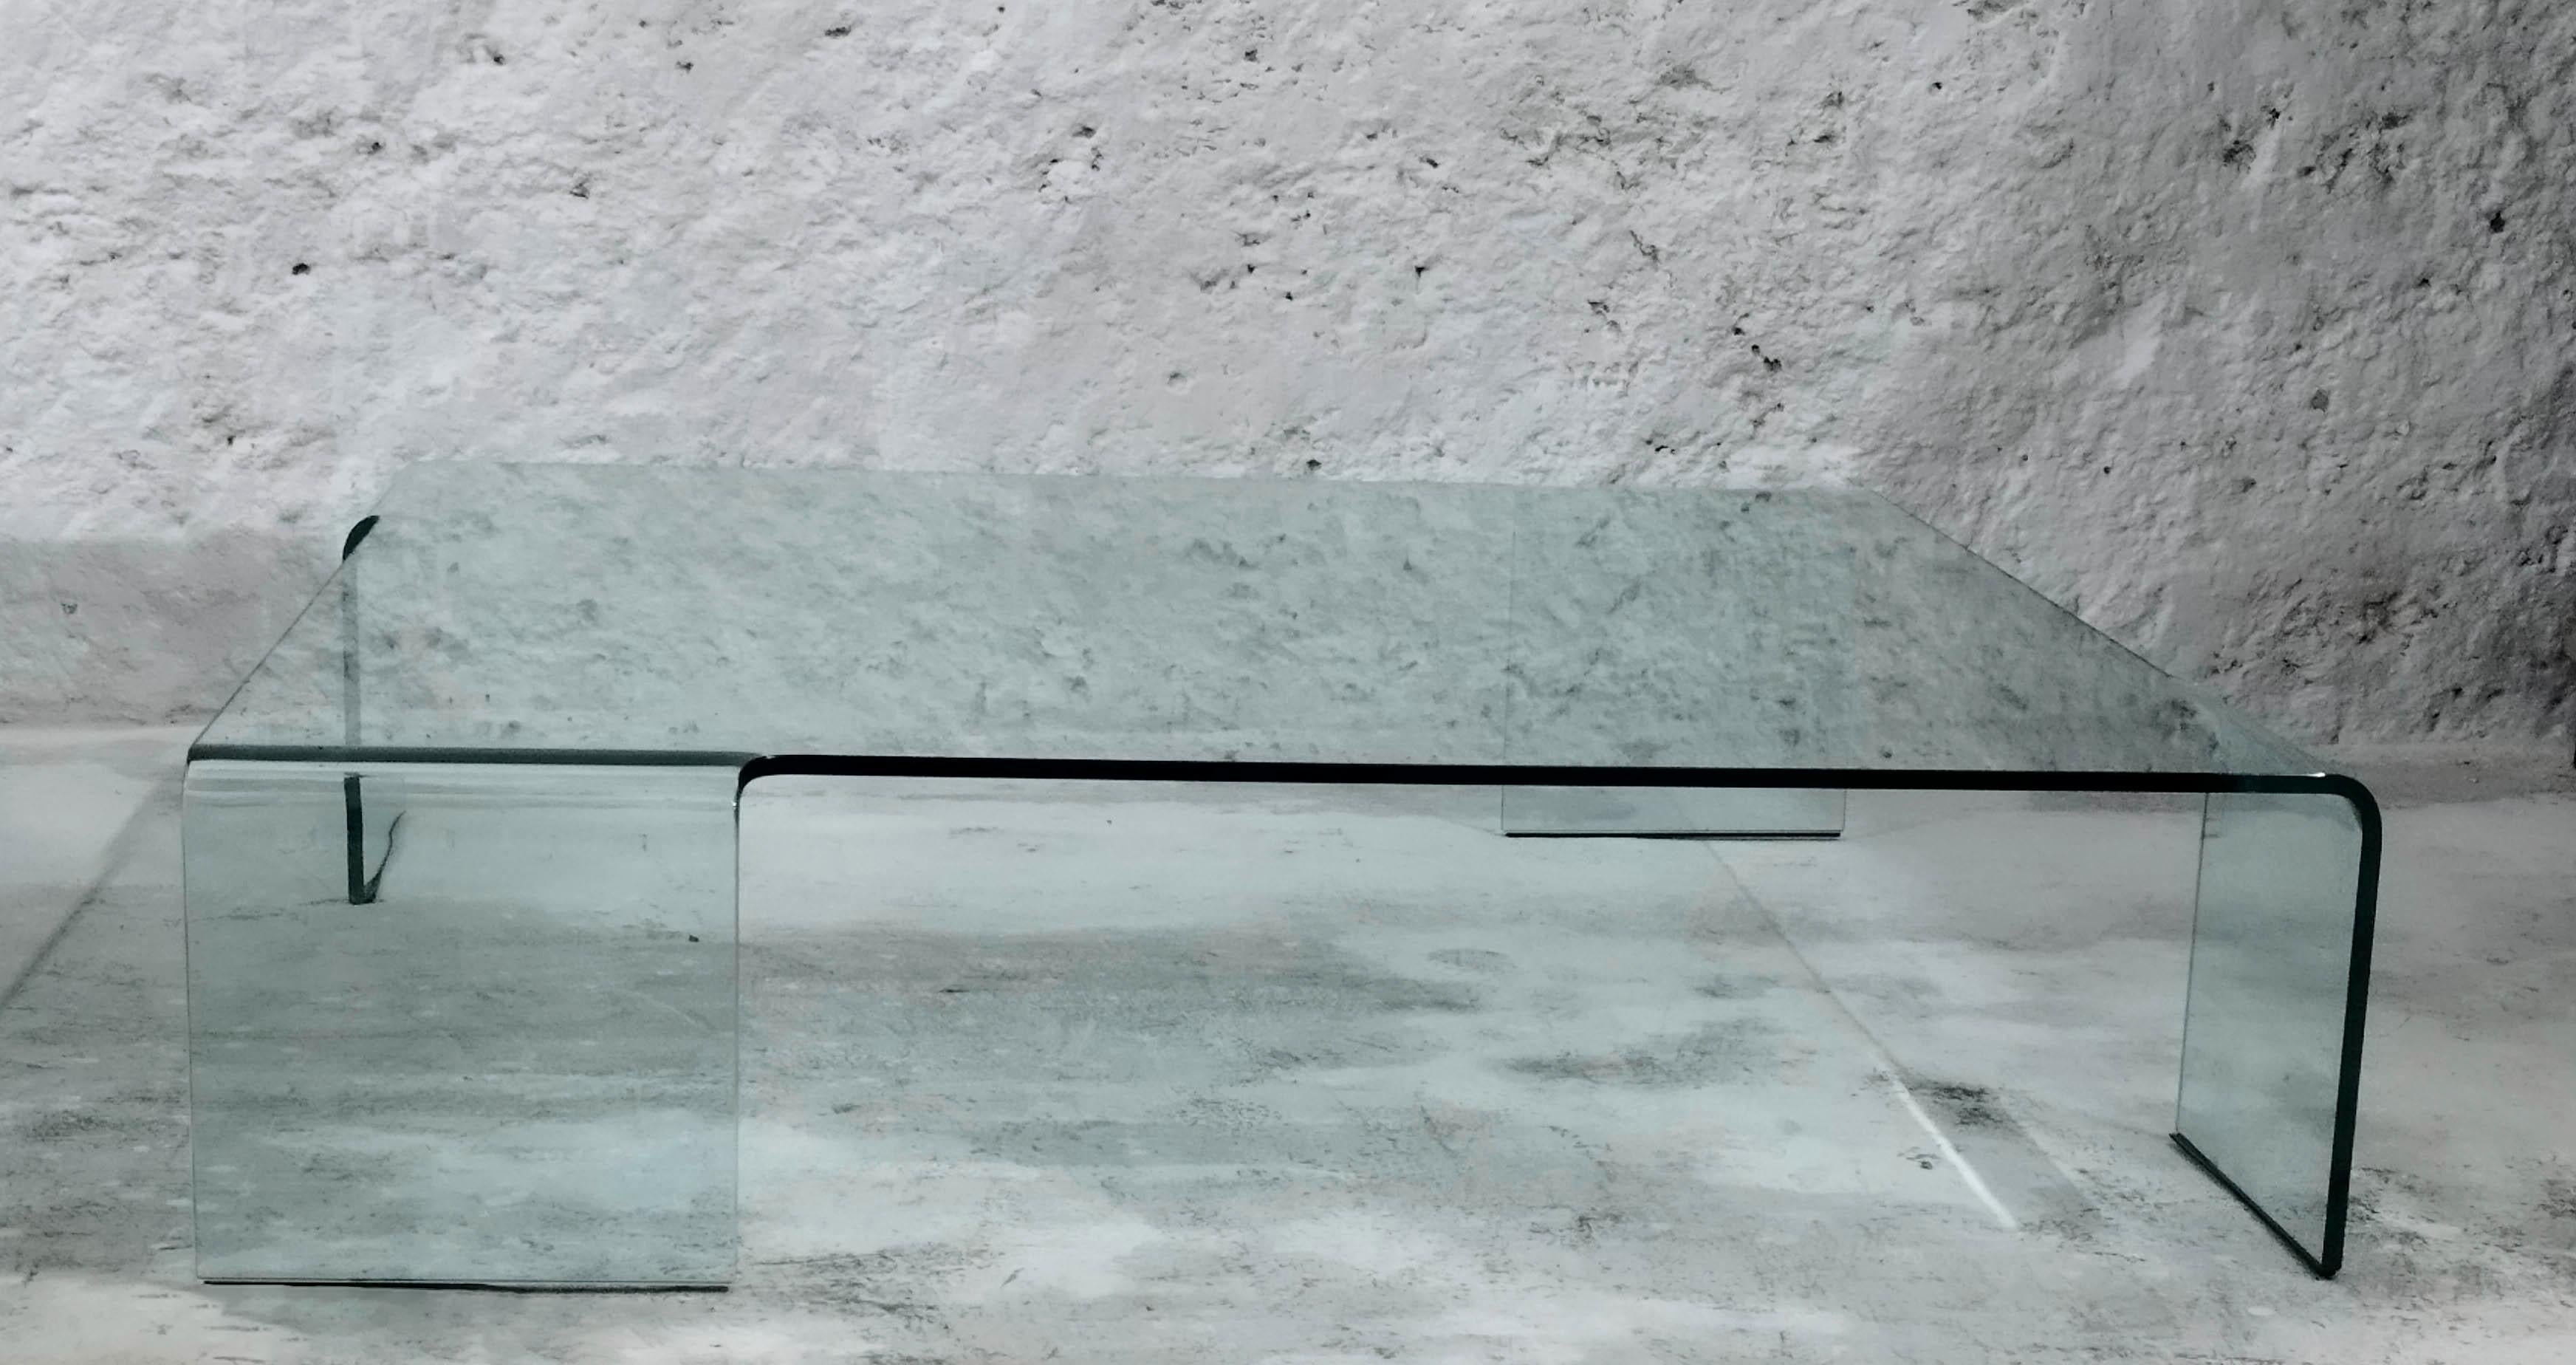 Rodolfo Dordoni a conçu plusieurs meubles pour FIAM, dont Neutra, la table basse en verre incurvé.
L'architecte et designer Rodolfo Dordoni est né en 1954 à Milan, où il a obtenu son diplôme d'architecture en 1979.
Son expertise en matière de design